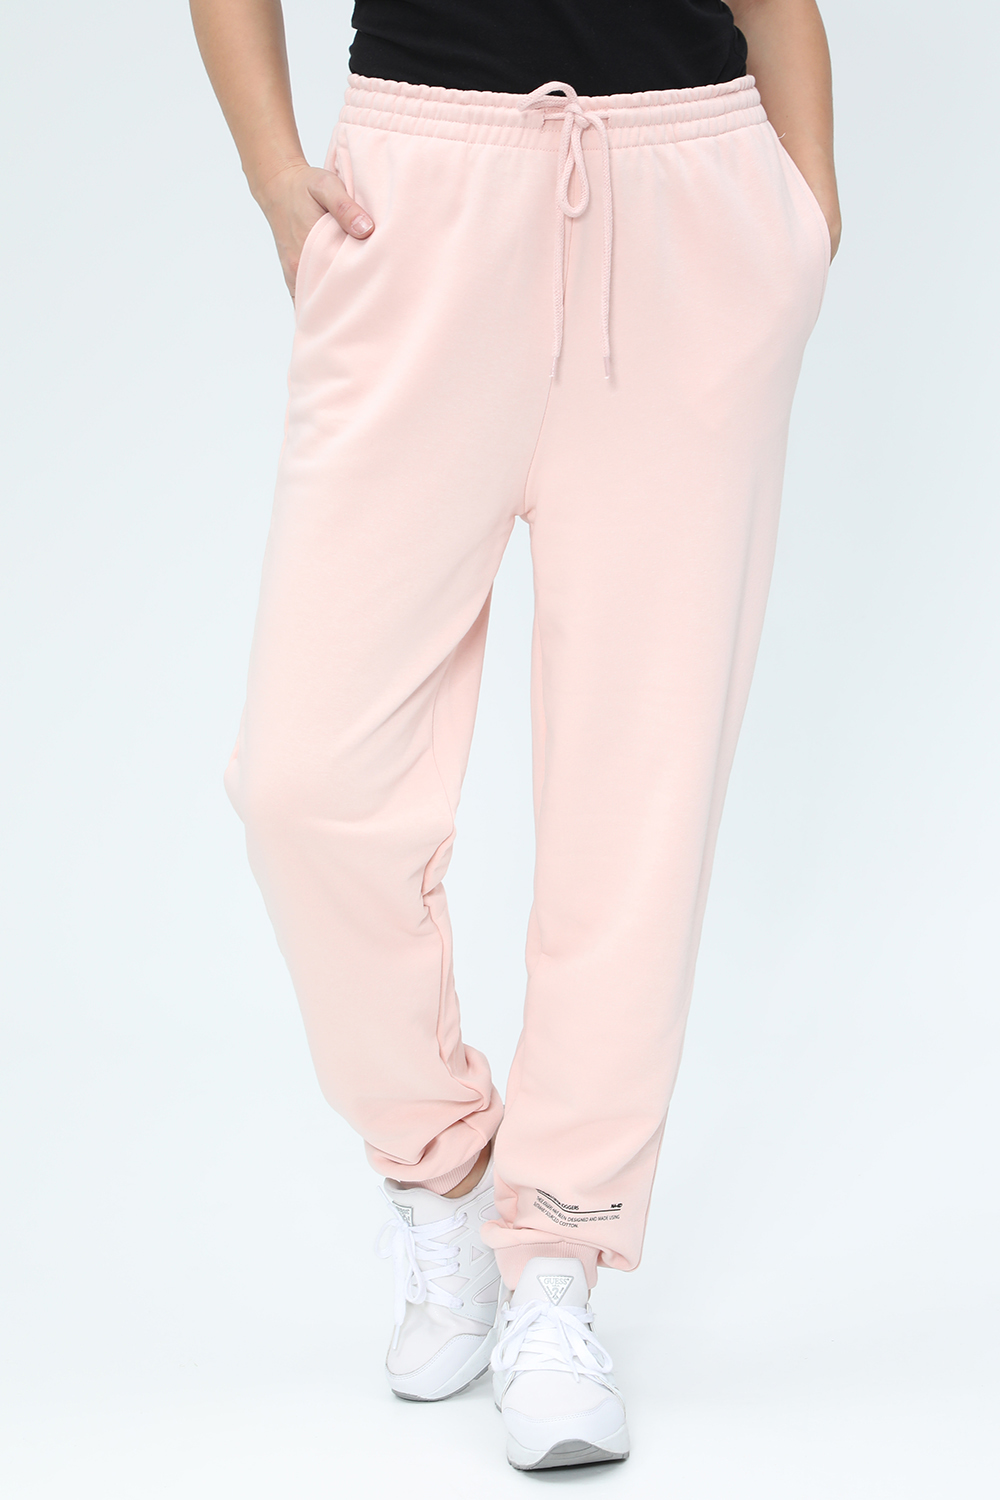 Γυναικεία/Ρούχα/Παντελόνια/Φόρμες NA-KD - Γυναικείο παντελόνι φόρμας NA-KD ροζ